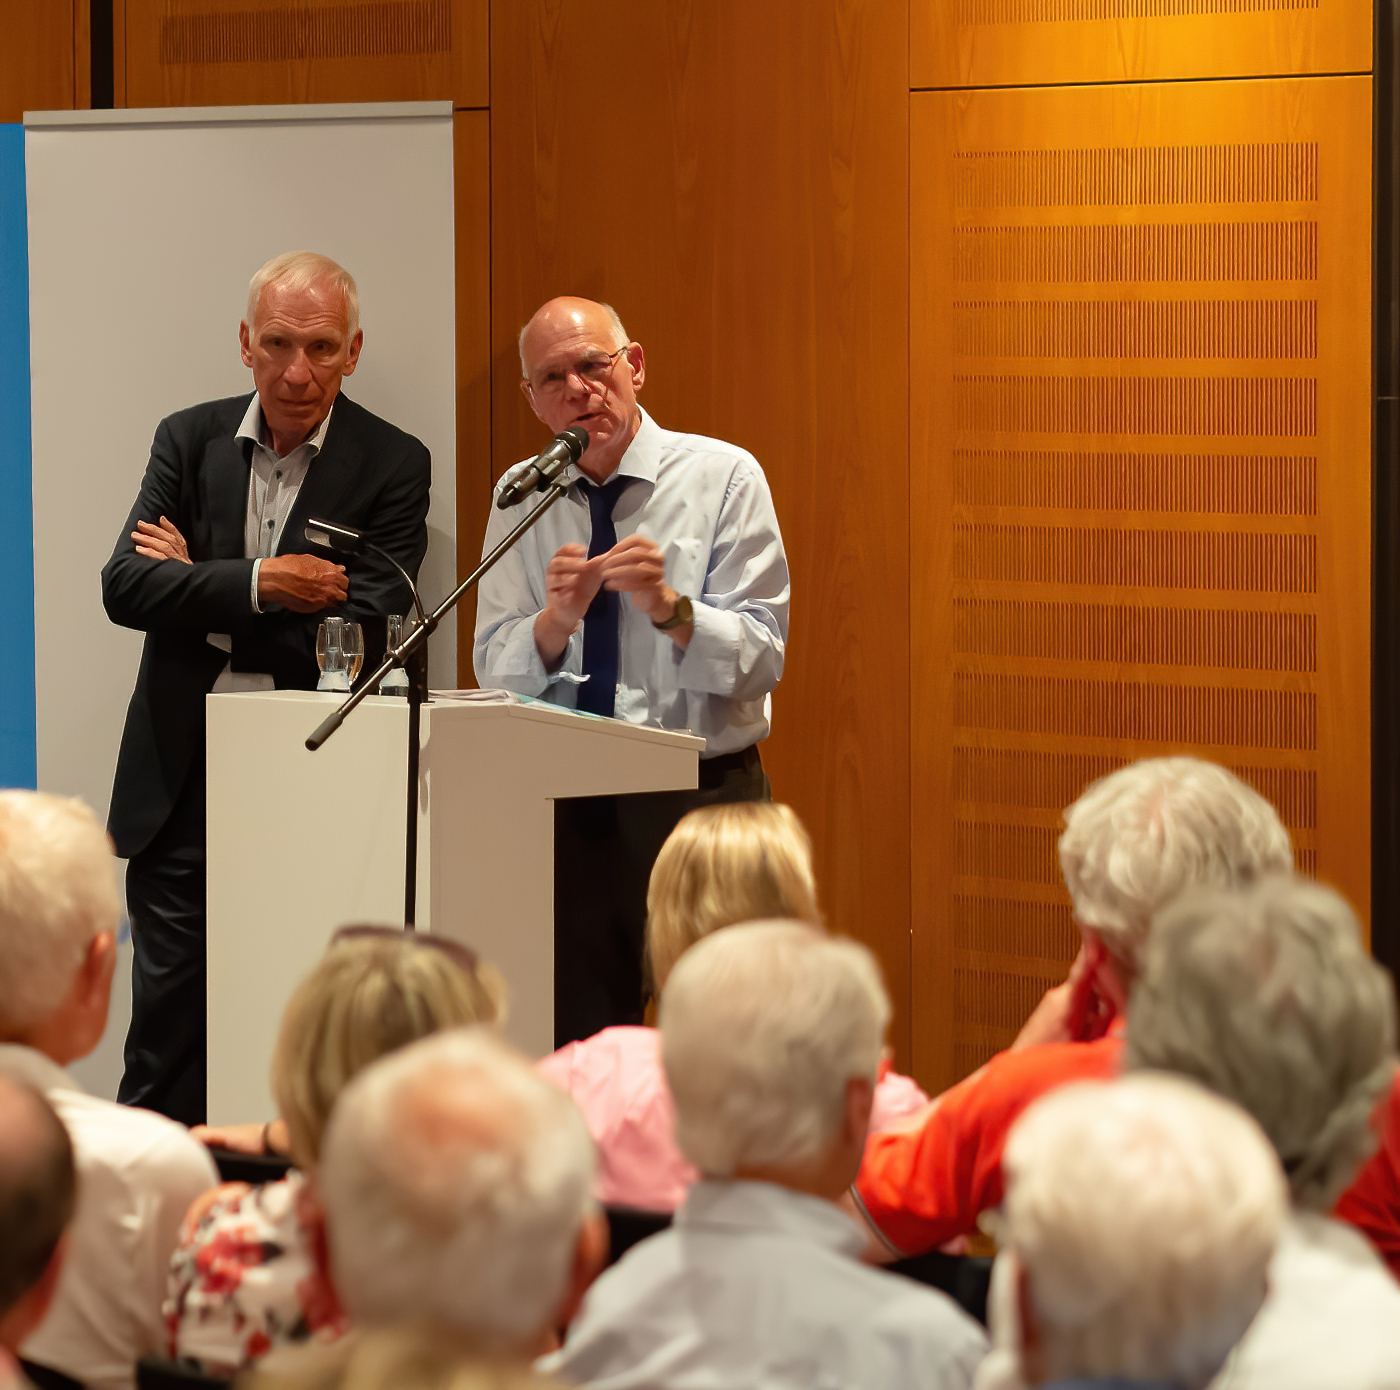 Prof. Norbert Lammert in der Diskussion mit dem Publikum. Links neben ihm der Gastgeber des Abends Dr. Reinhard Knüppel von Bürgerimpulse.